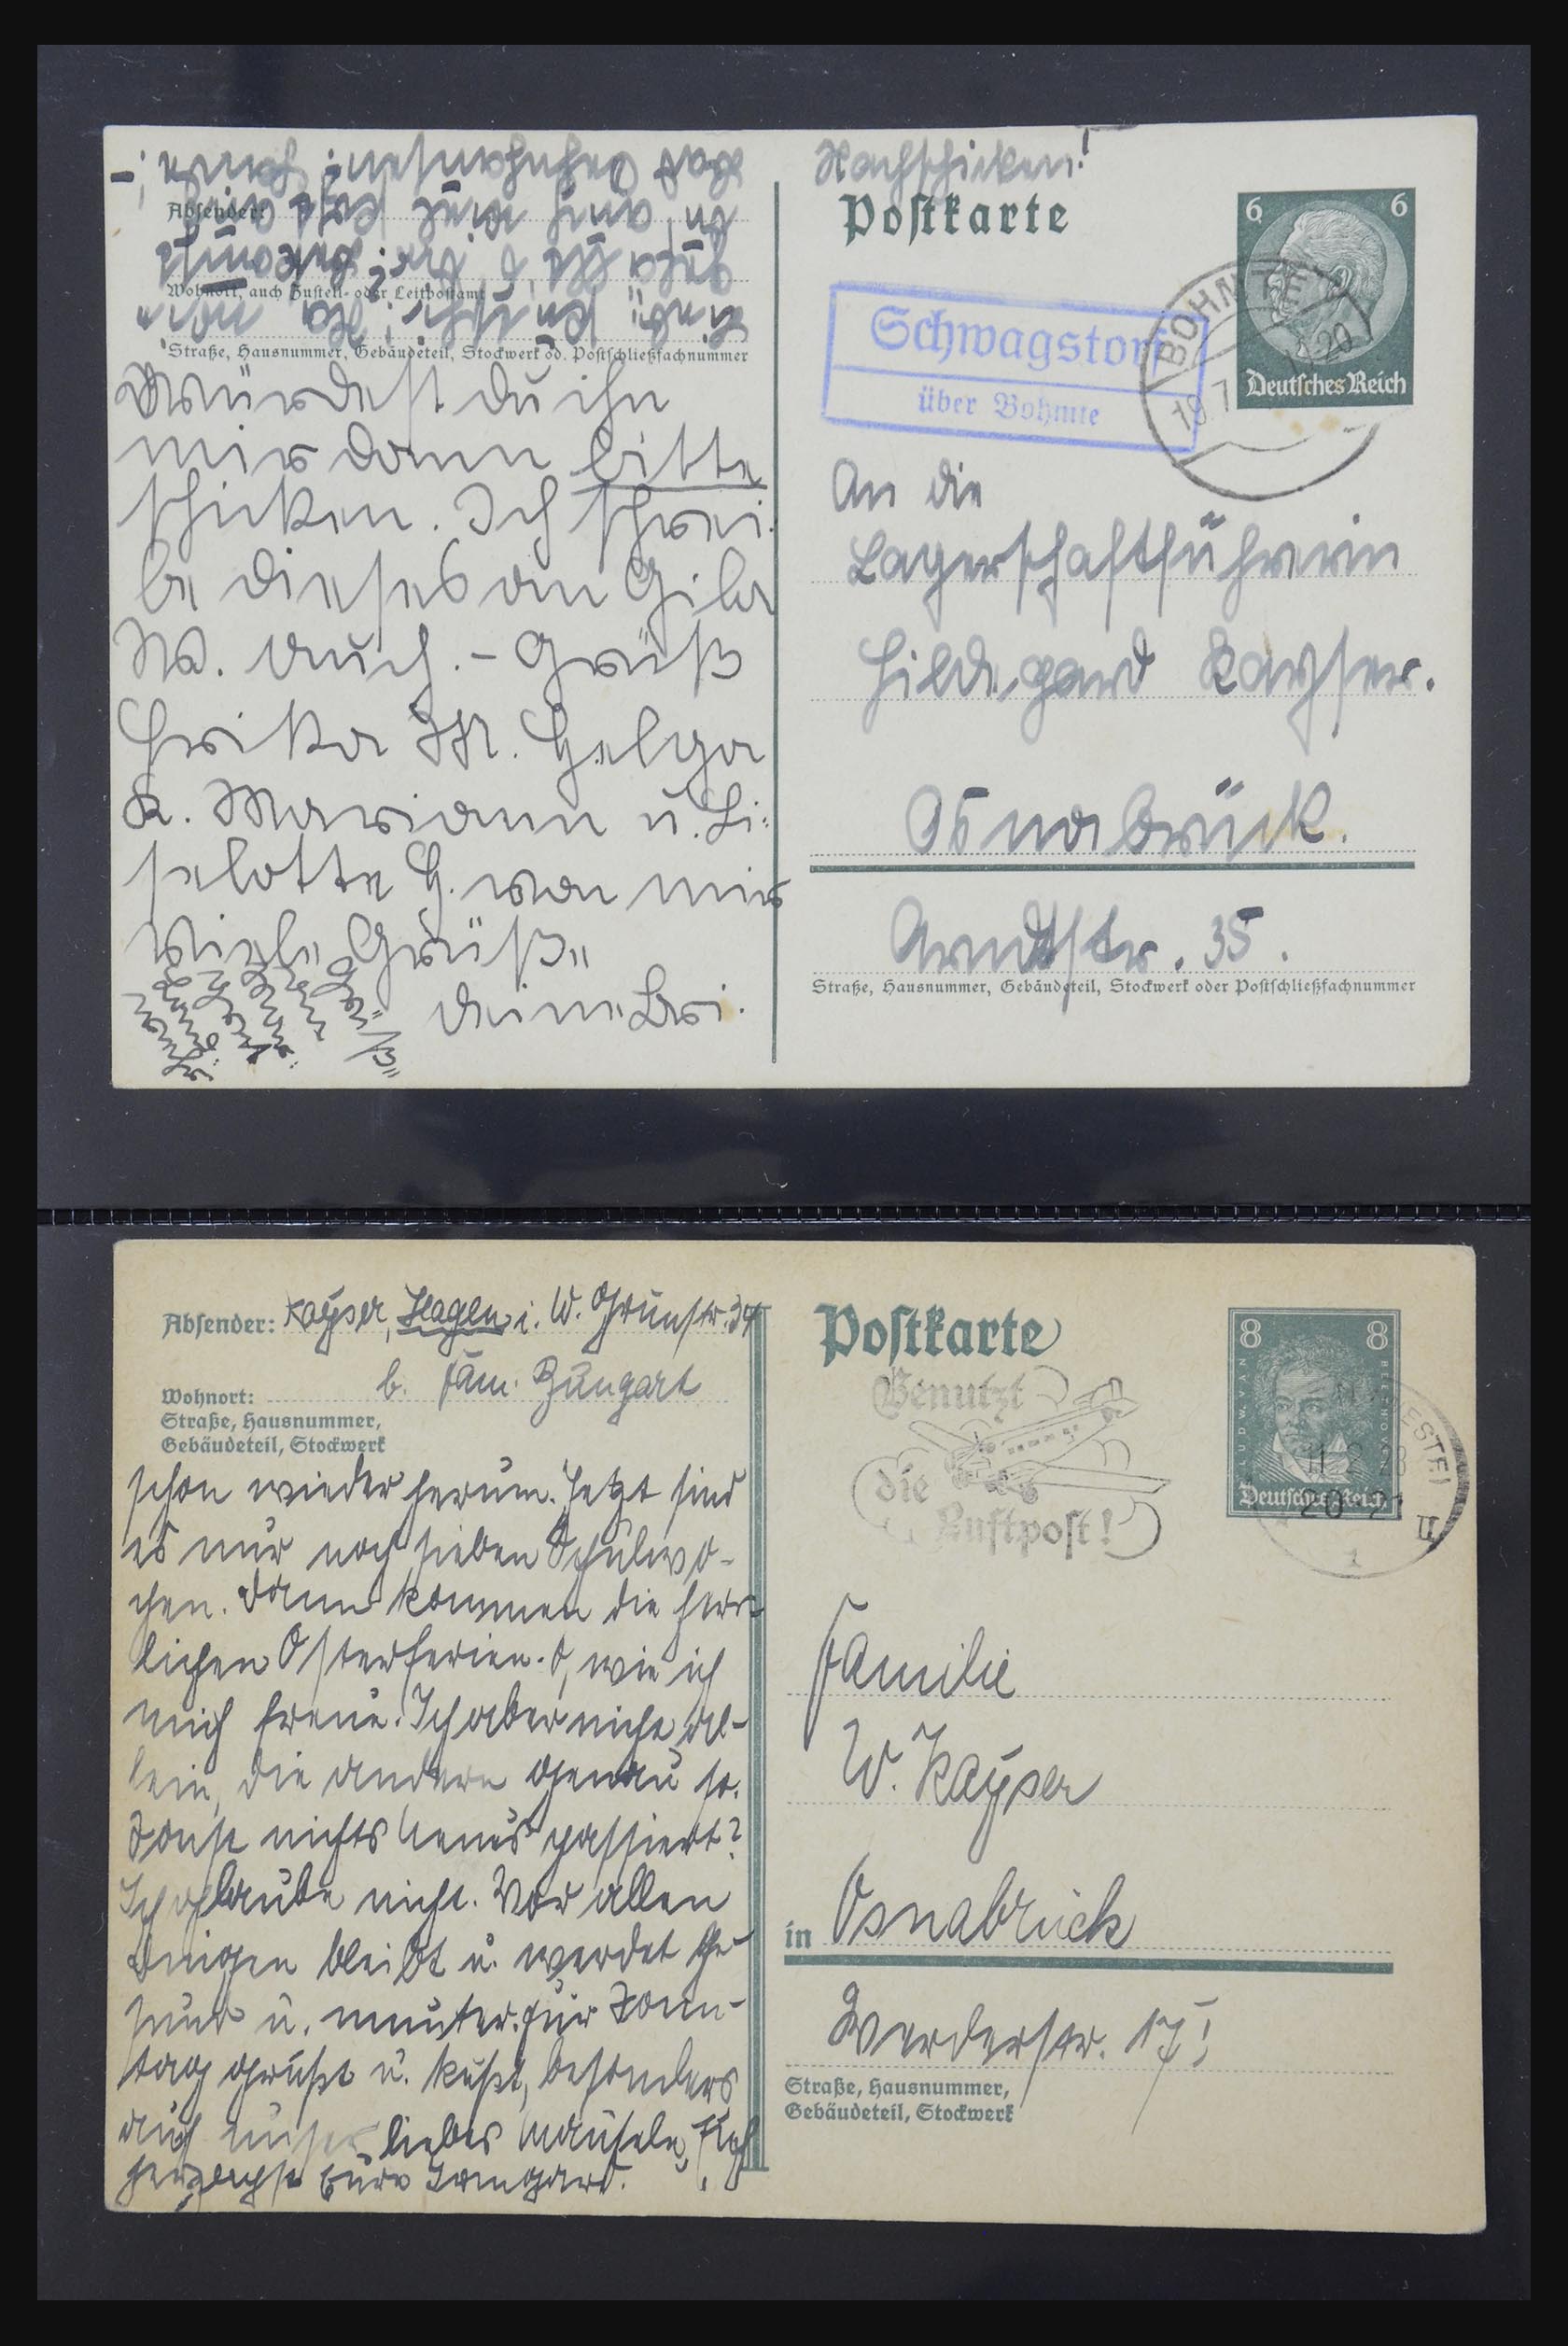 31952 441 - 31952 German Reich cards.